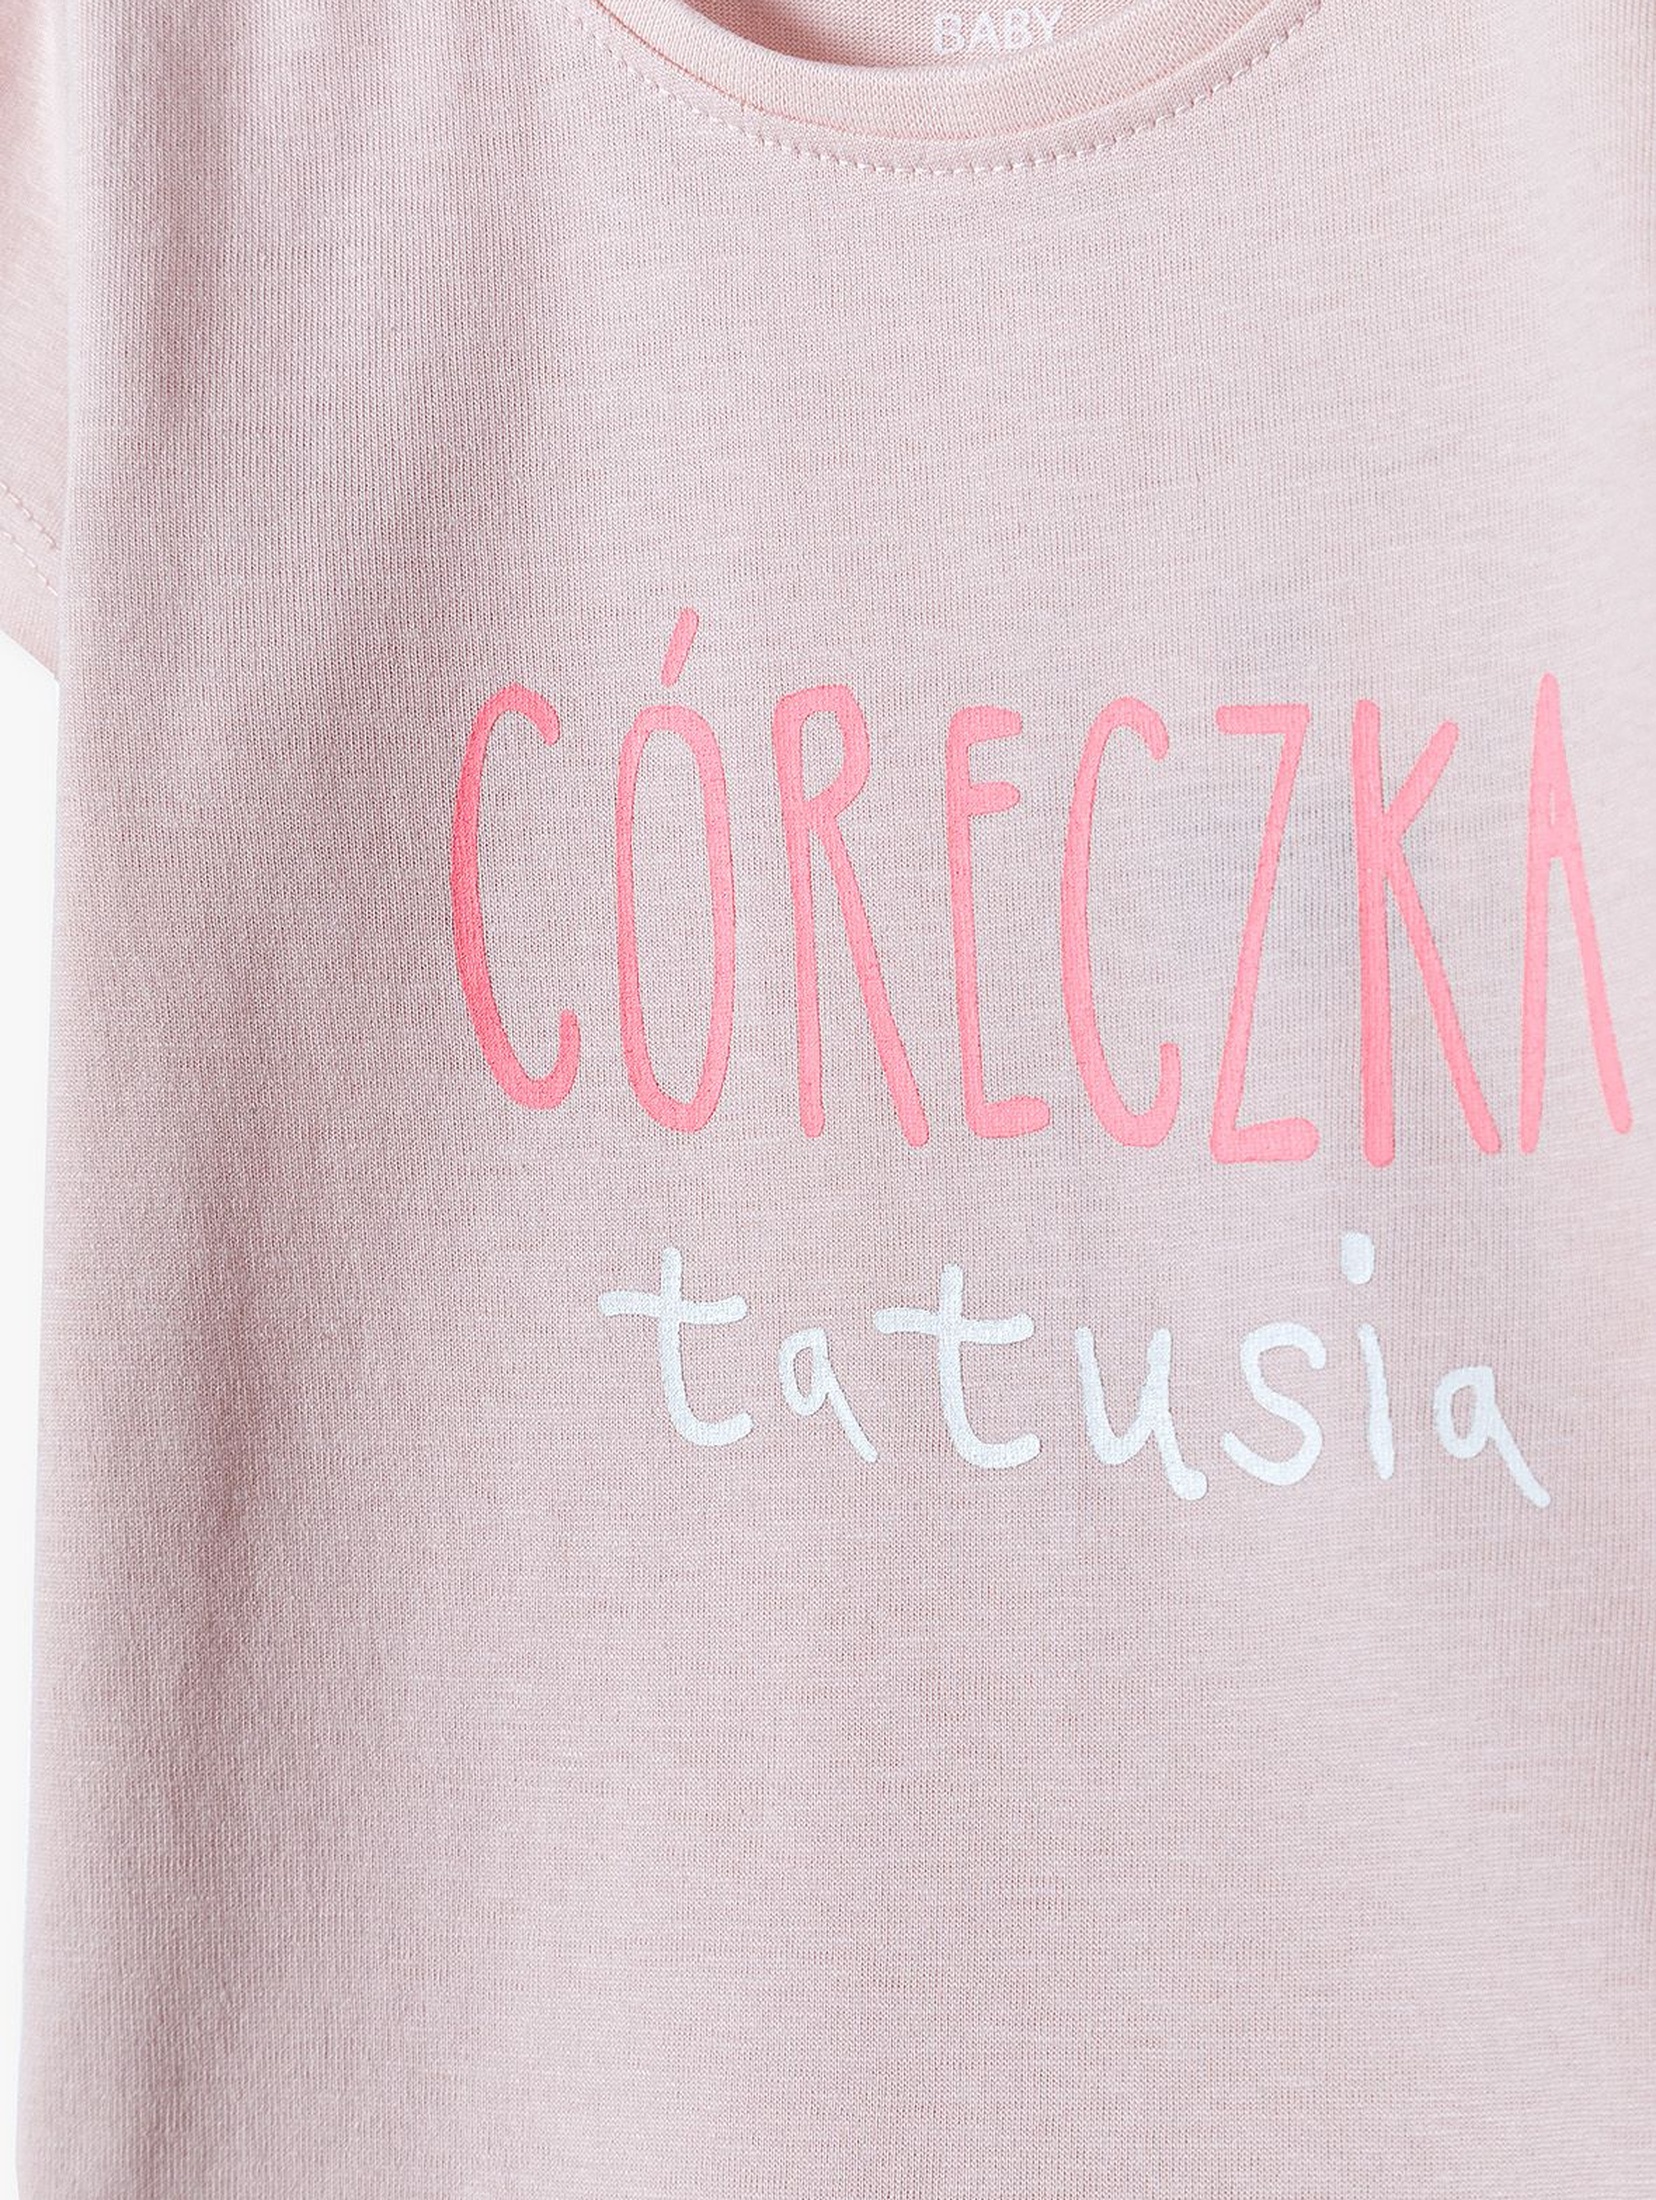 Bawełniany T-shirt - różowy z napisem Córeczka Tatusia